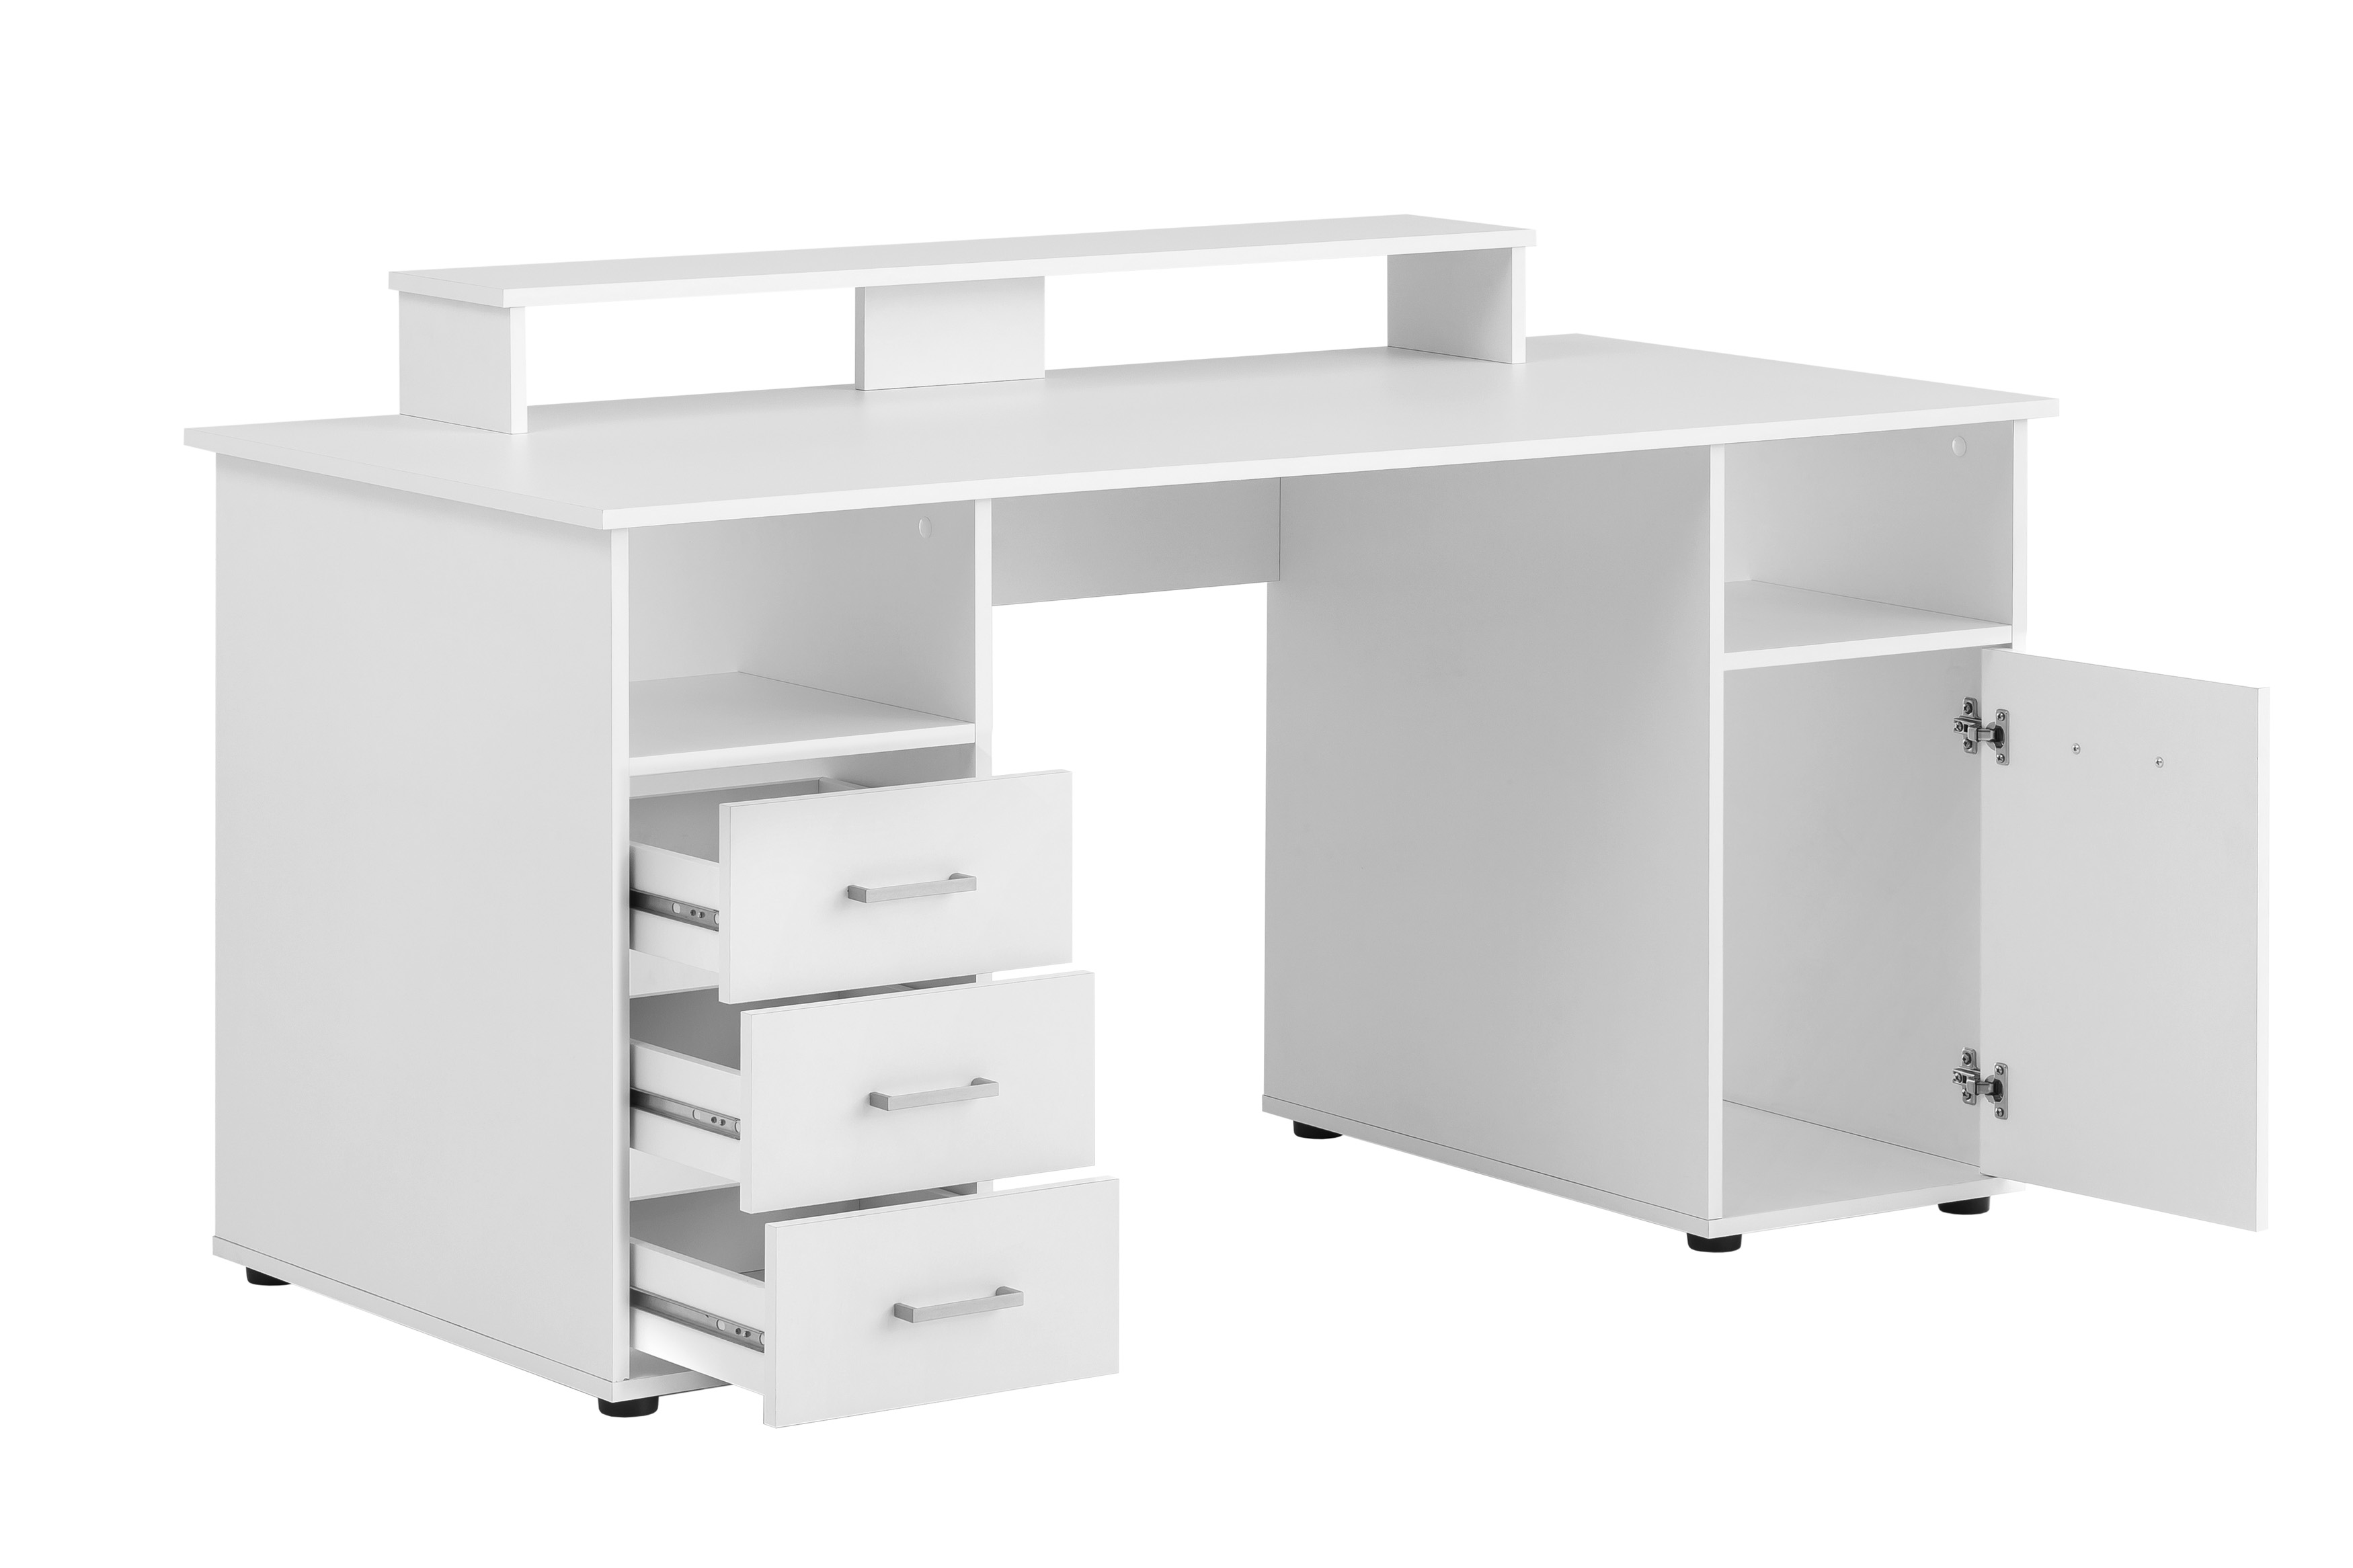 Möbelpartner Schreibtisch Fox | Large | HxBxT 86x150x70cm | 3 Schubladen, 2 offene Fächer, 1 Fach mit Flügeltür & Monitorständer | Weiß